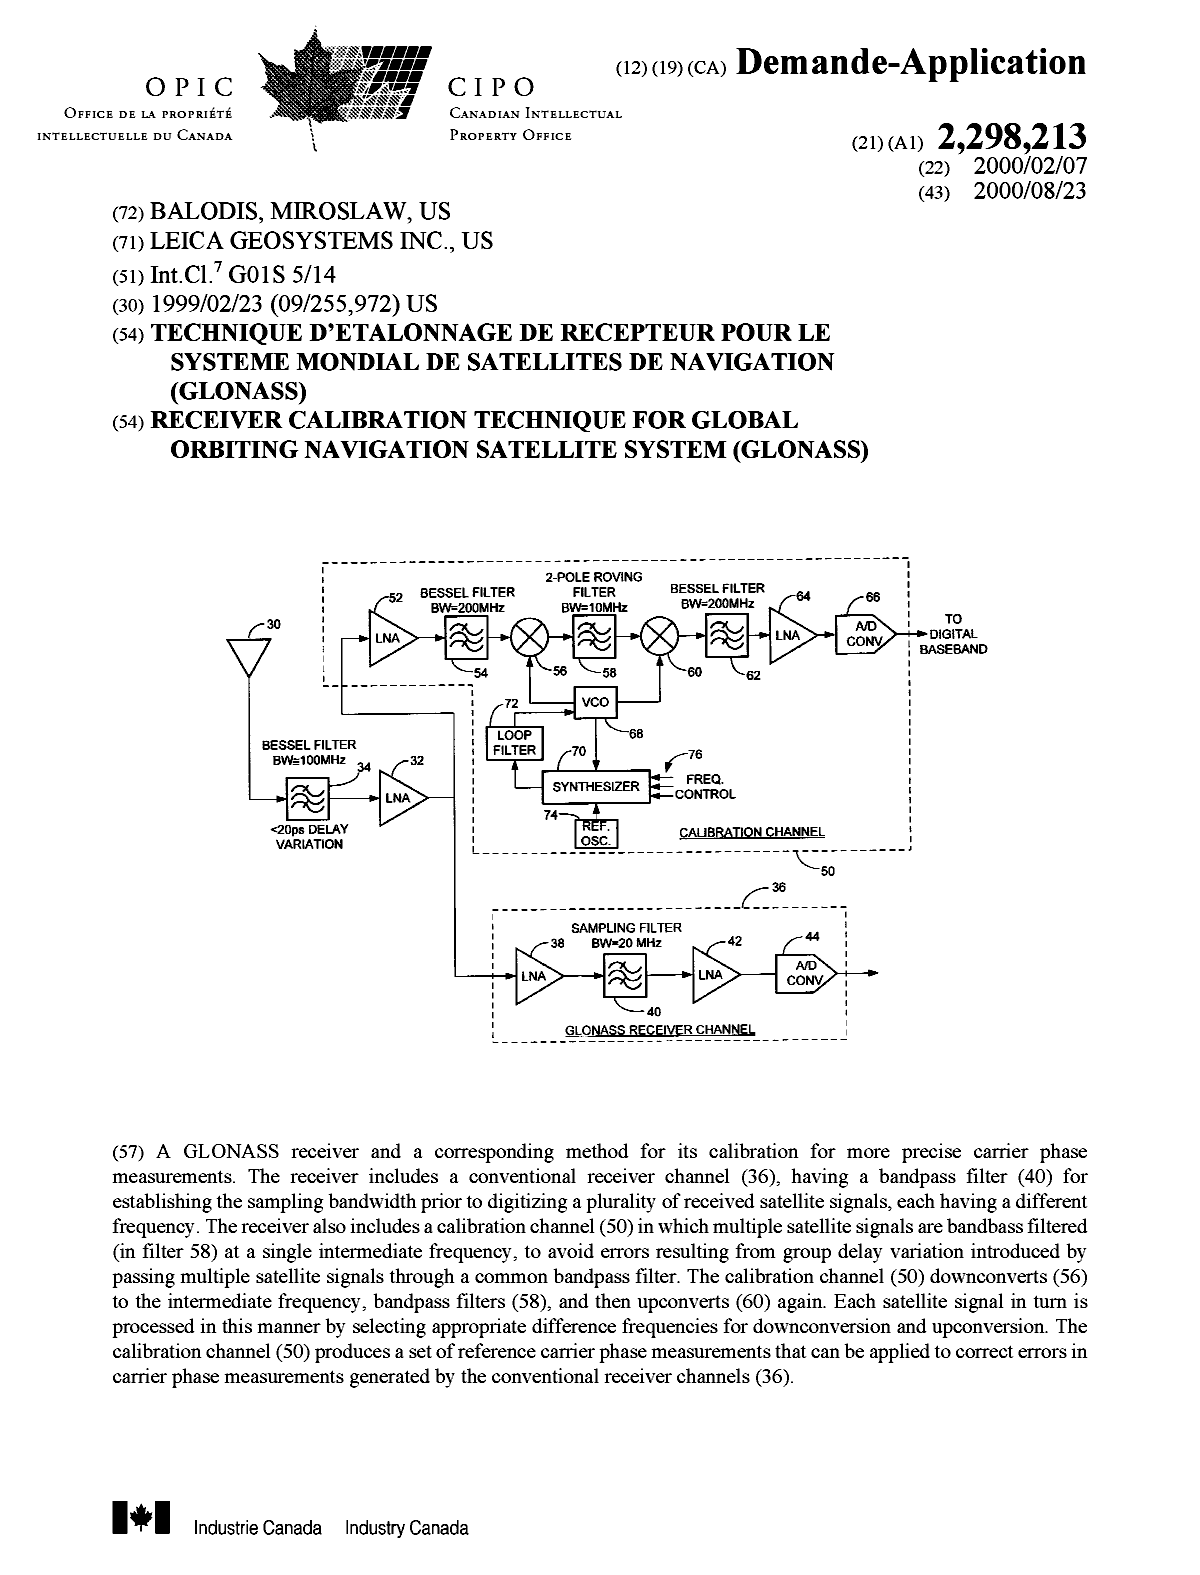 Document de brevet canadien 2298213. Page couverture 20000821. Image 1 de 1